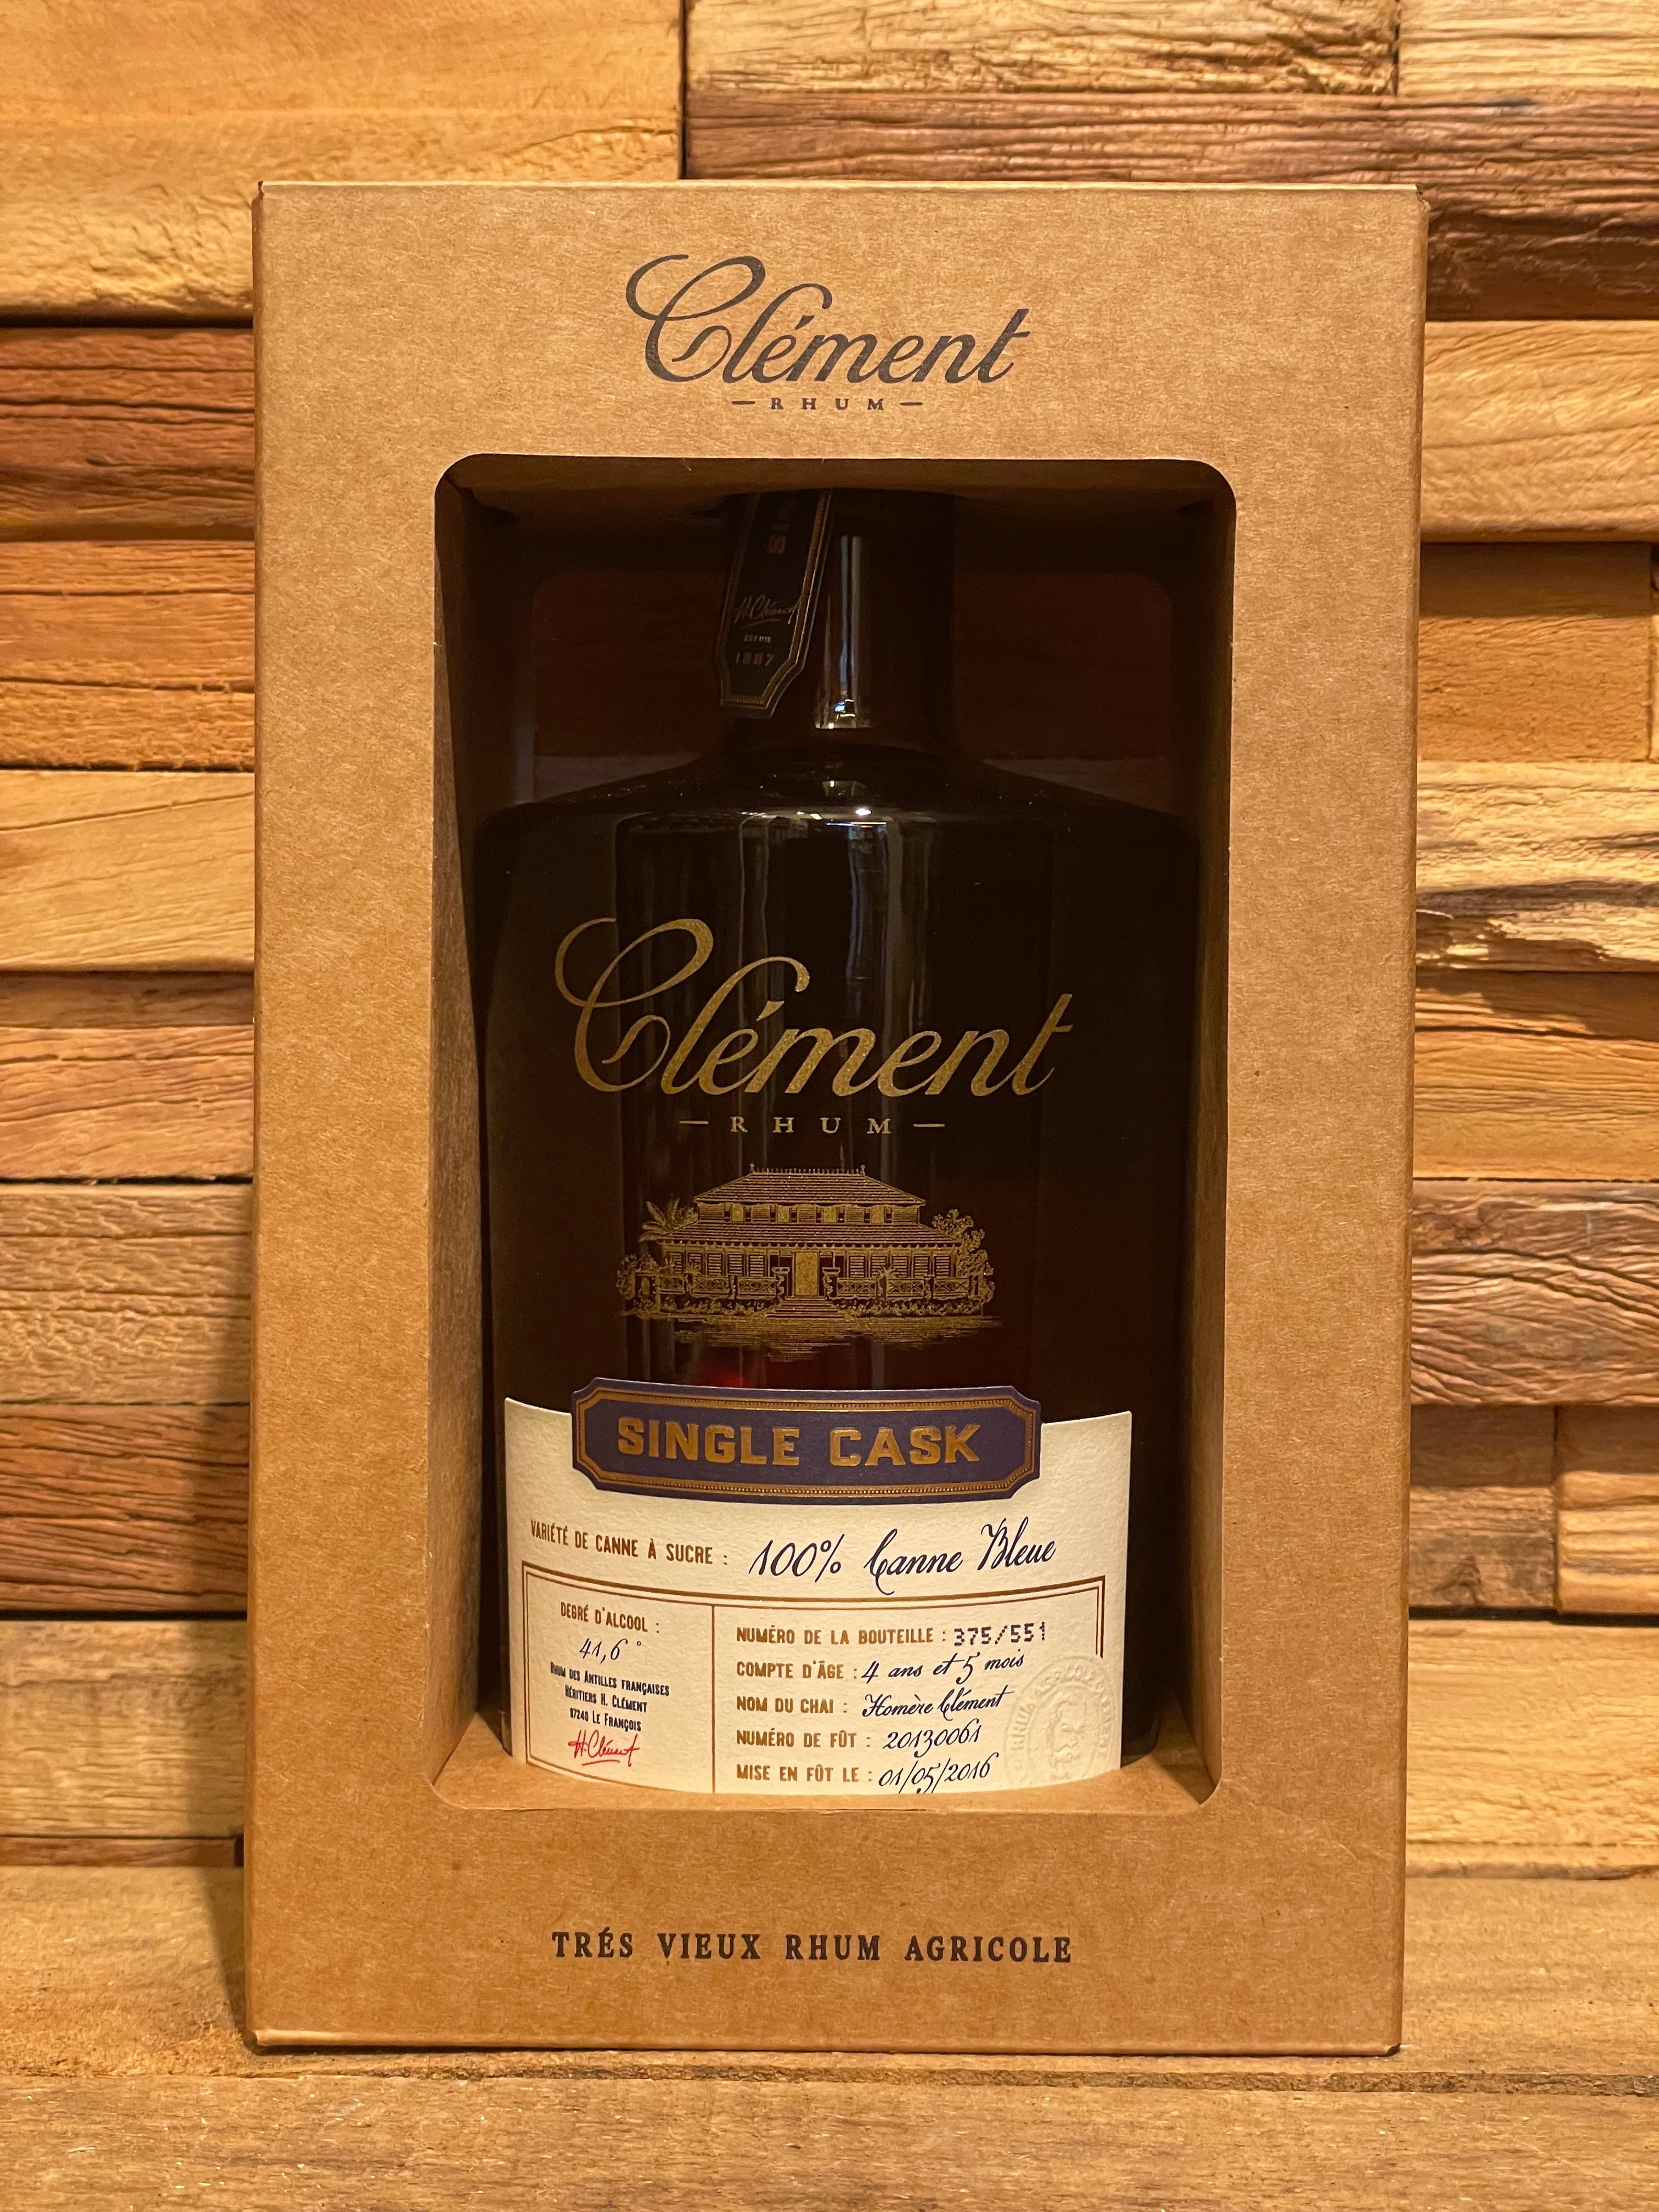 Clément - Single Cask 100% Blue Cane